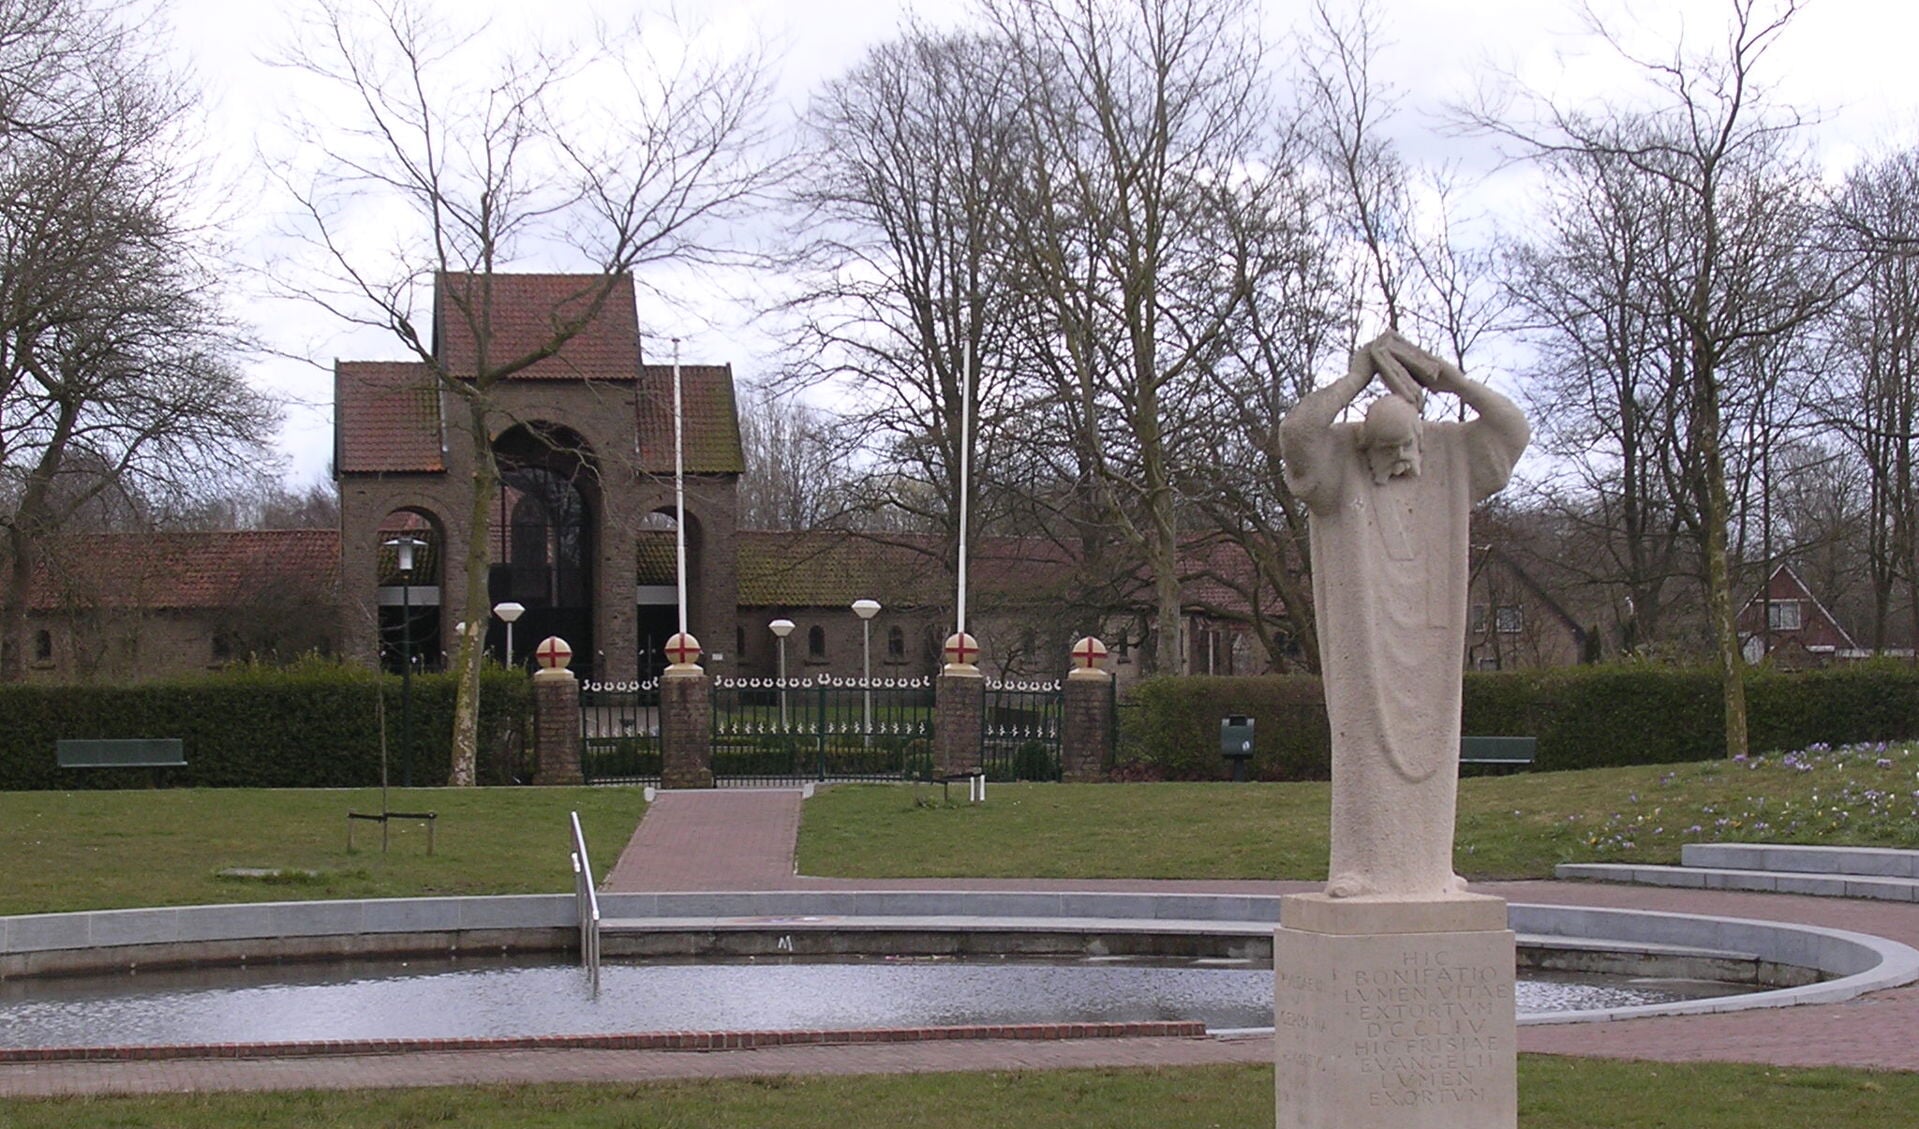 Standbeeld van Bonifatius en de kapel bij de Bonifatiusbron in het naar hem genoemde park te Dokkum.